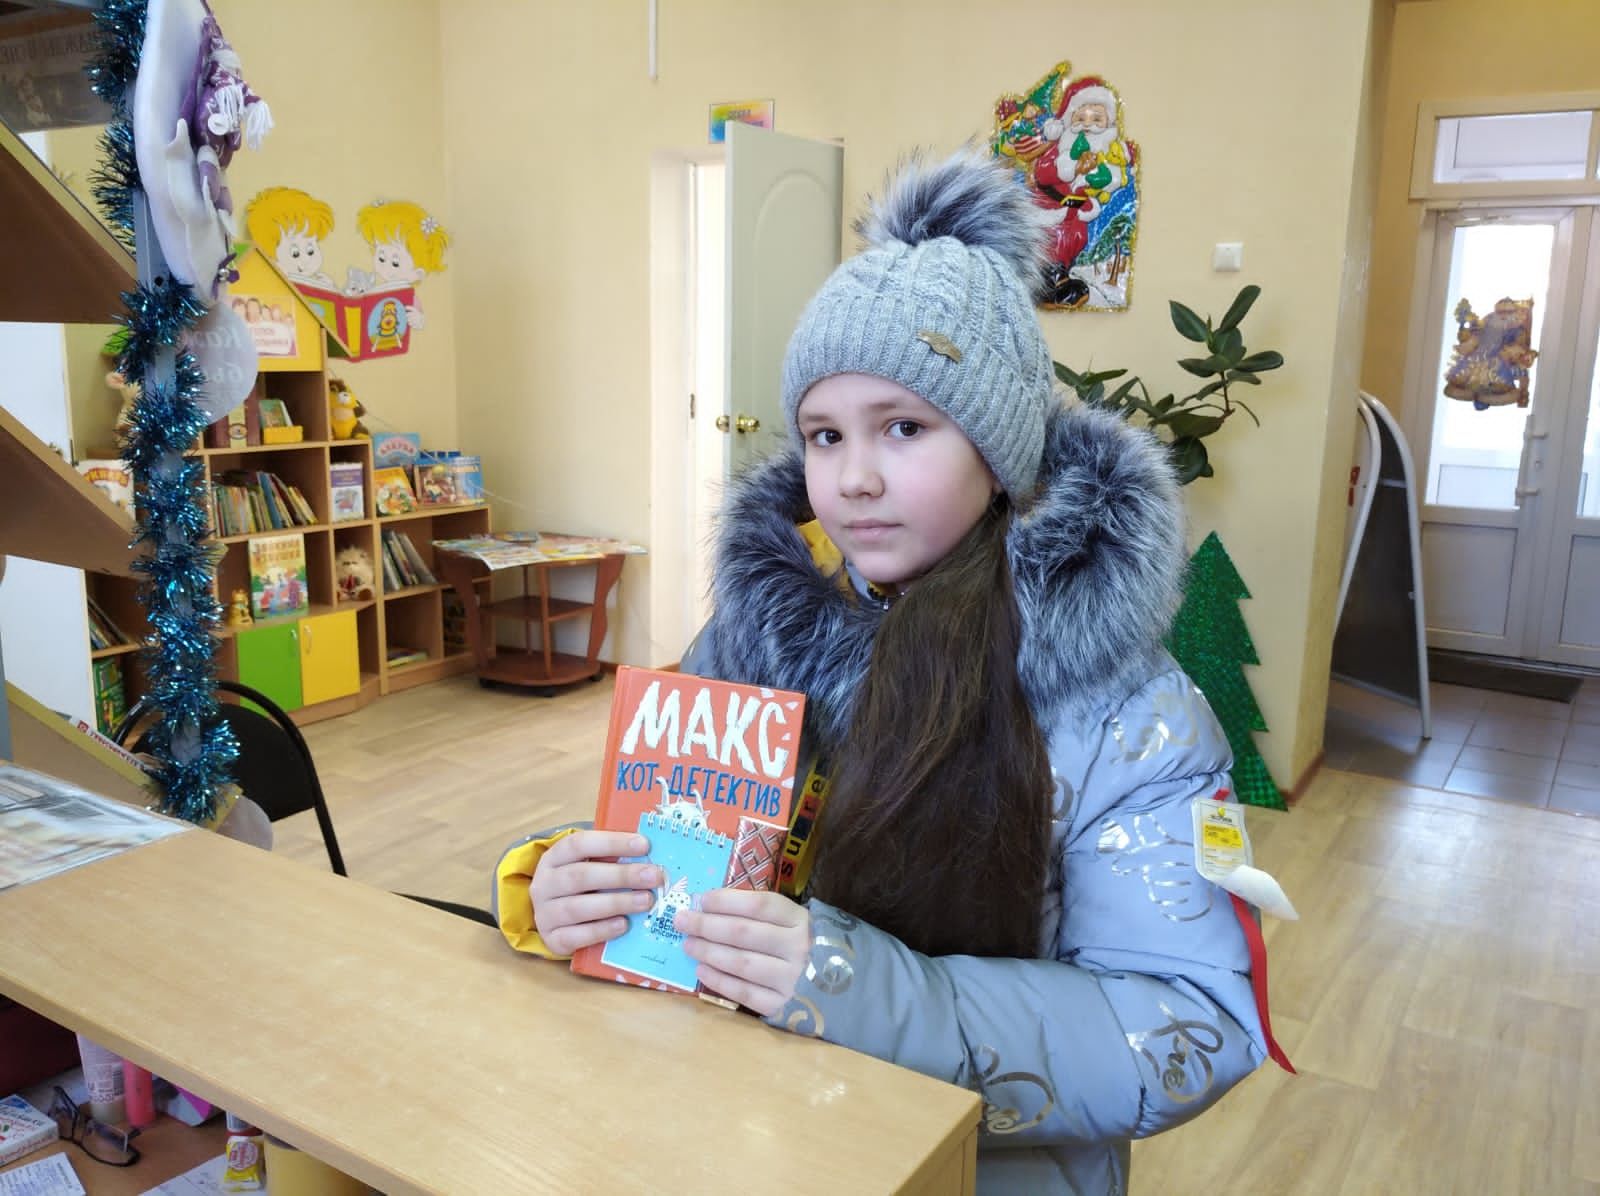 В детской библиотеке Болгара проходит акция "Первый читатель"